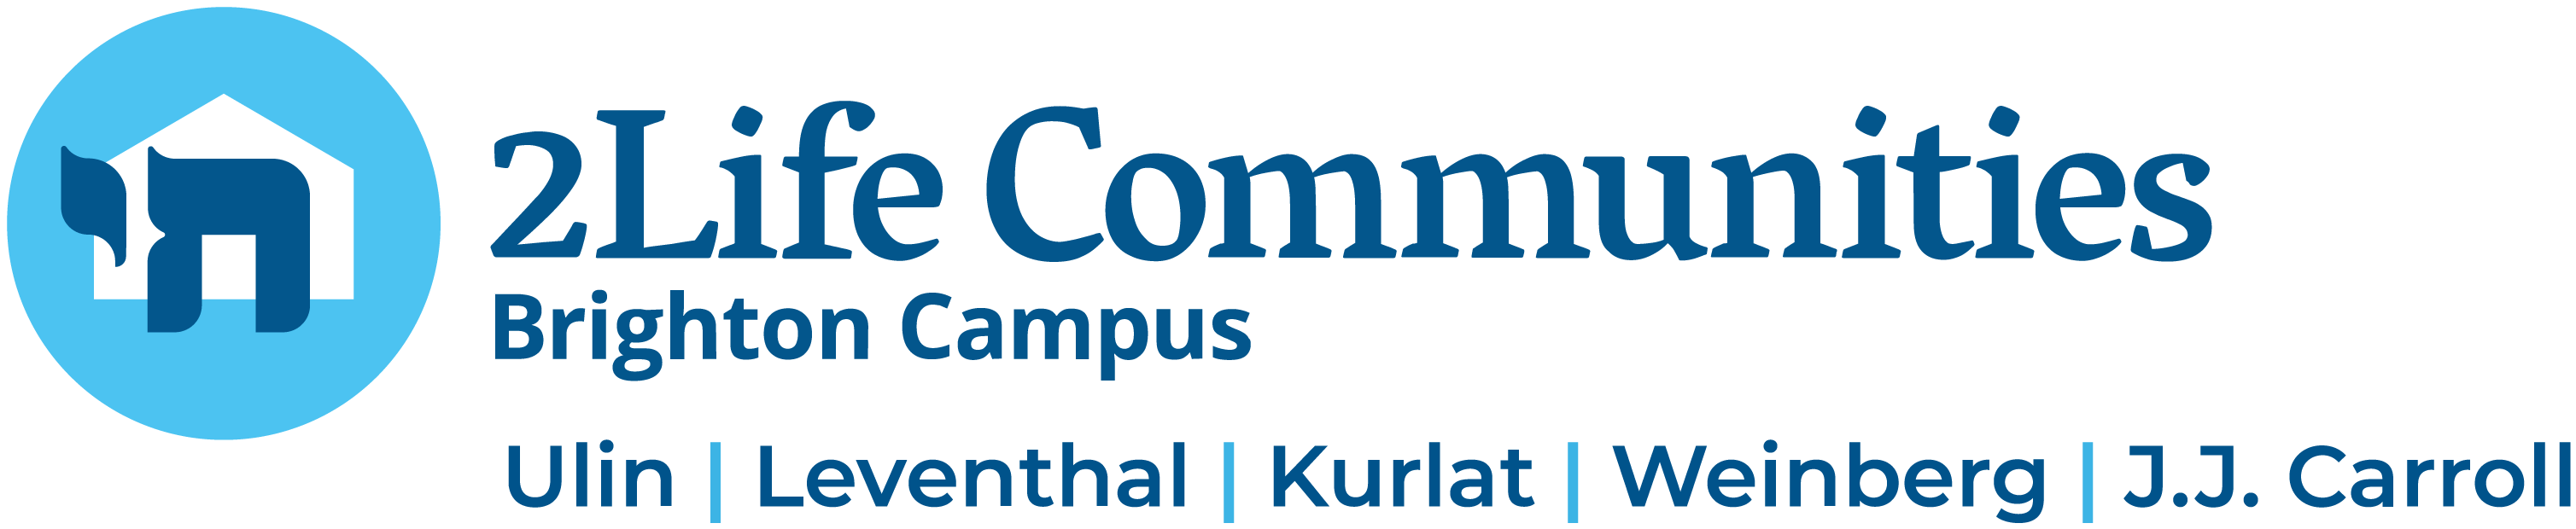 Brighton Campus Header Logo